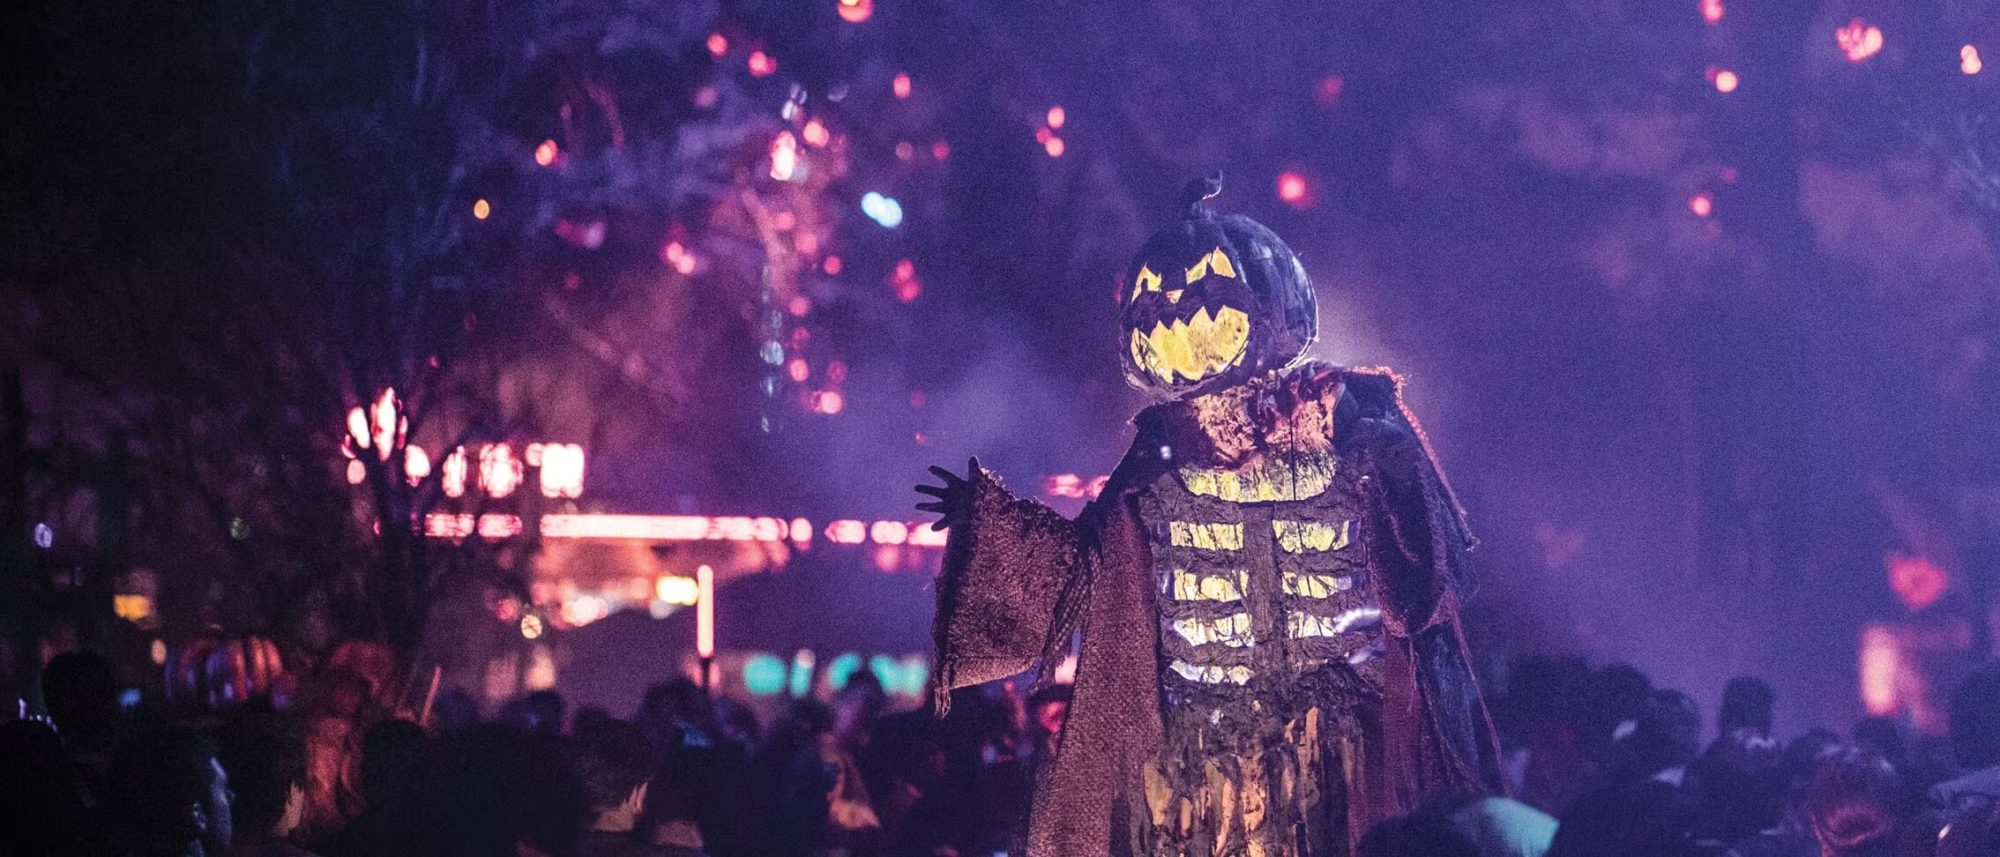 Universal anuncia Halloween Horror Nights com labirintos inspirados em  clássicos do terror - NerdBunker